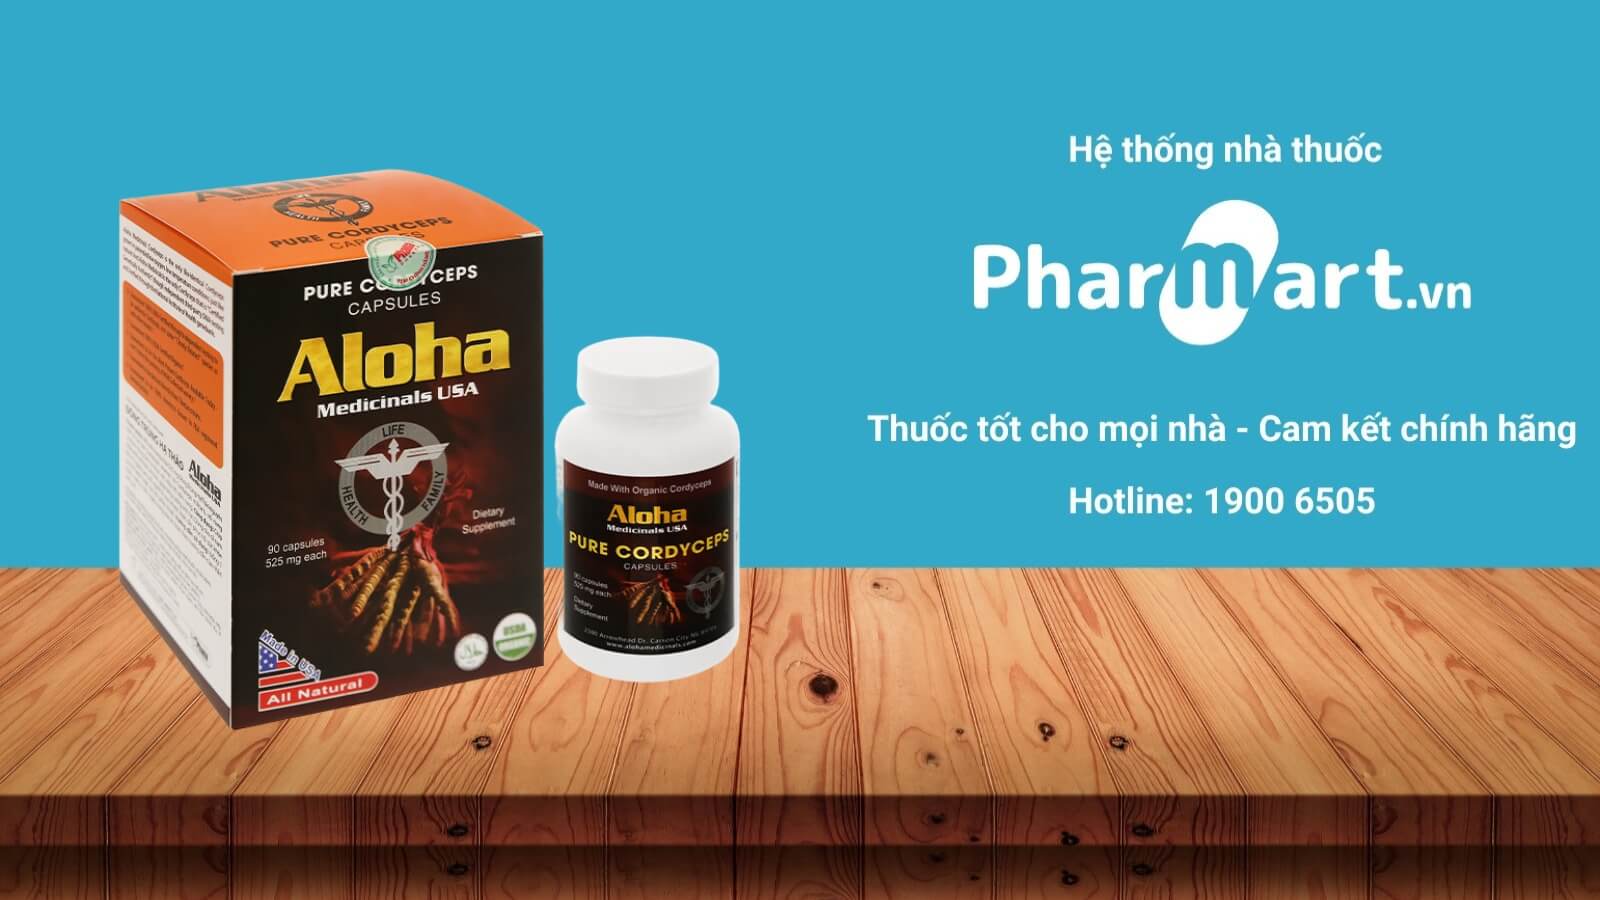 Mua Aloha Pure Cordyceps chính hãng tại Pharmart.vn